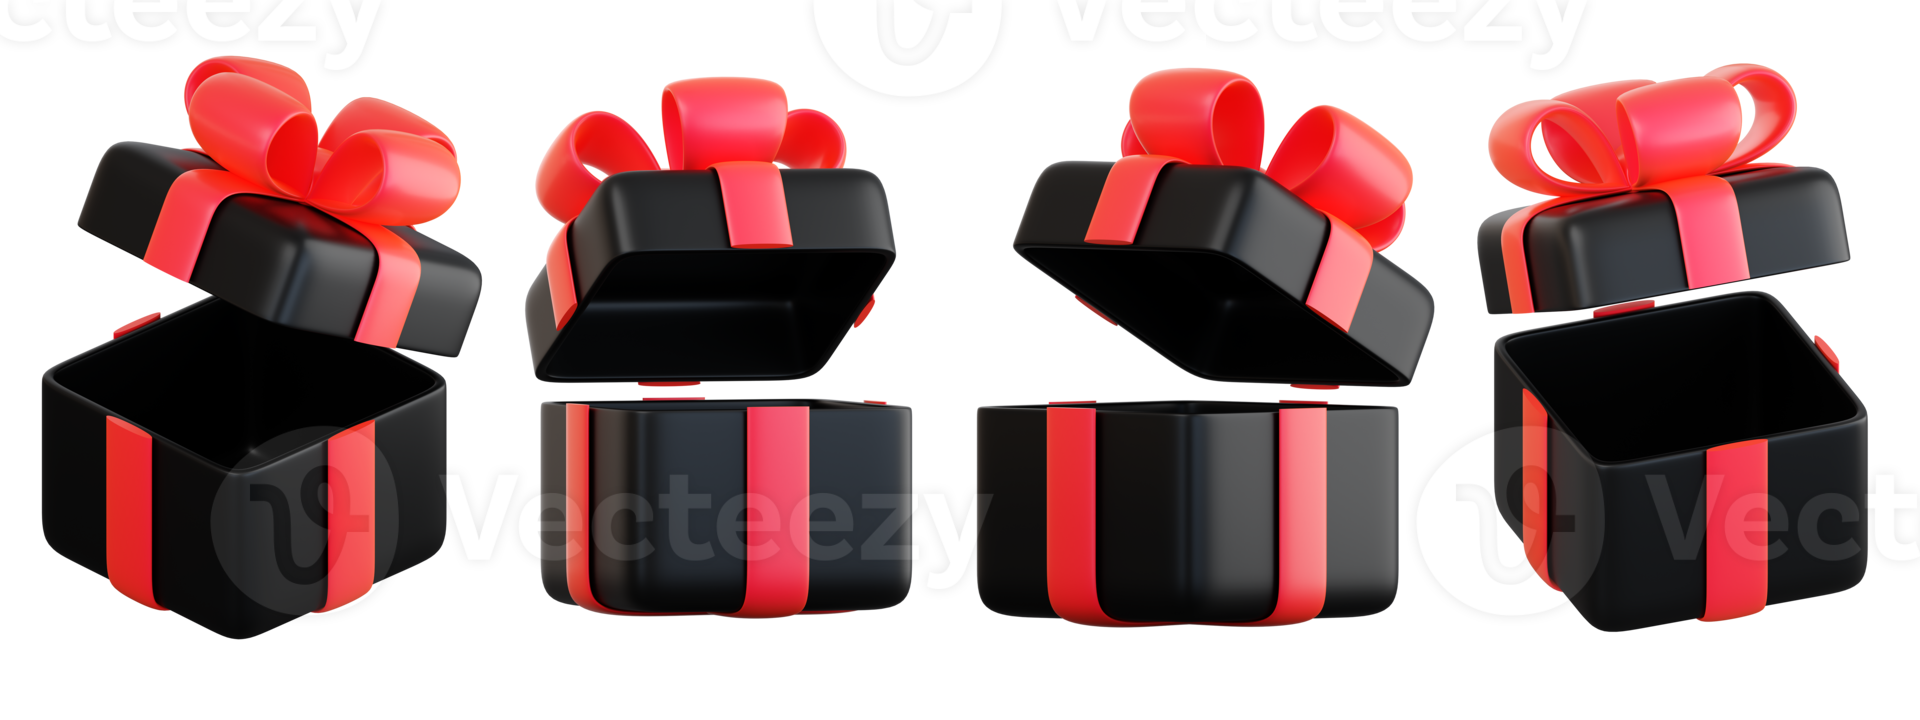 realistisches schwarzes geschenkboxset mit roter schleife. konzept des abstrakten feiertags-, geburtstags-, weihnachts- oder schwarzen freitagsgeschenks oder der überraschung. 3d hochwertiges isoliertes rendern png